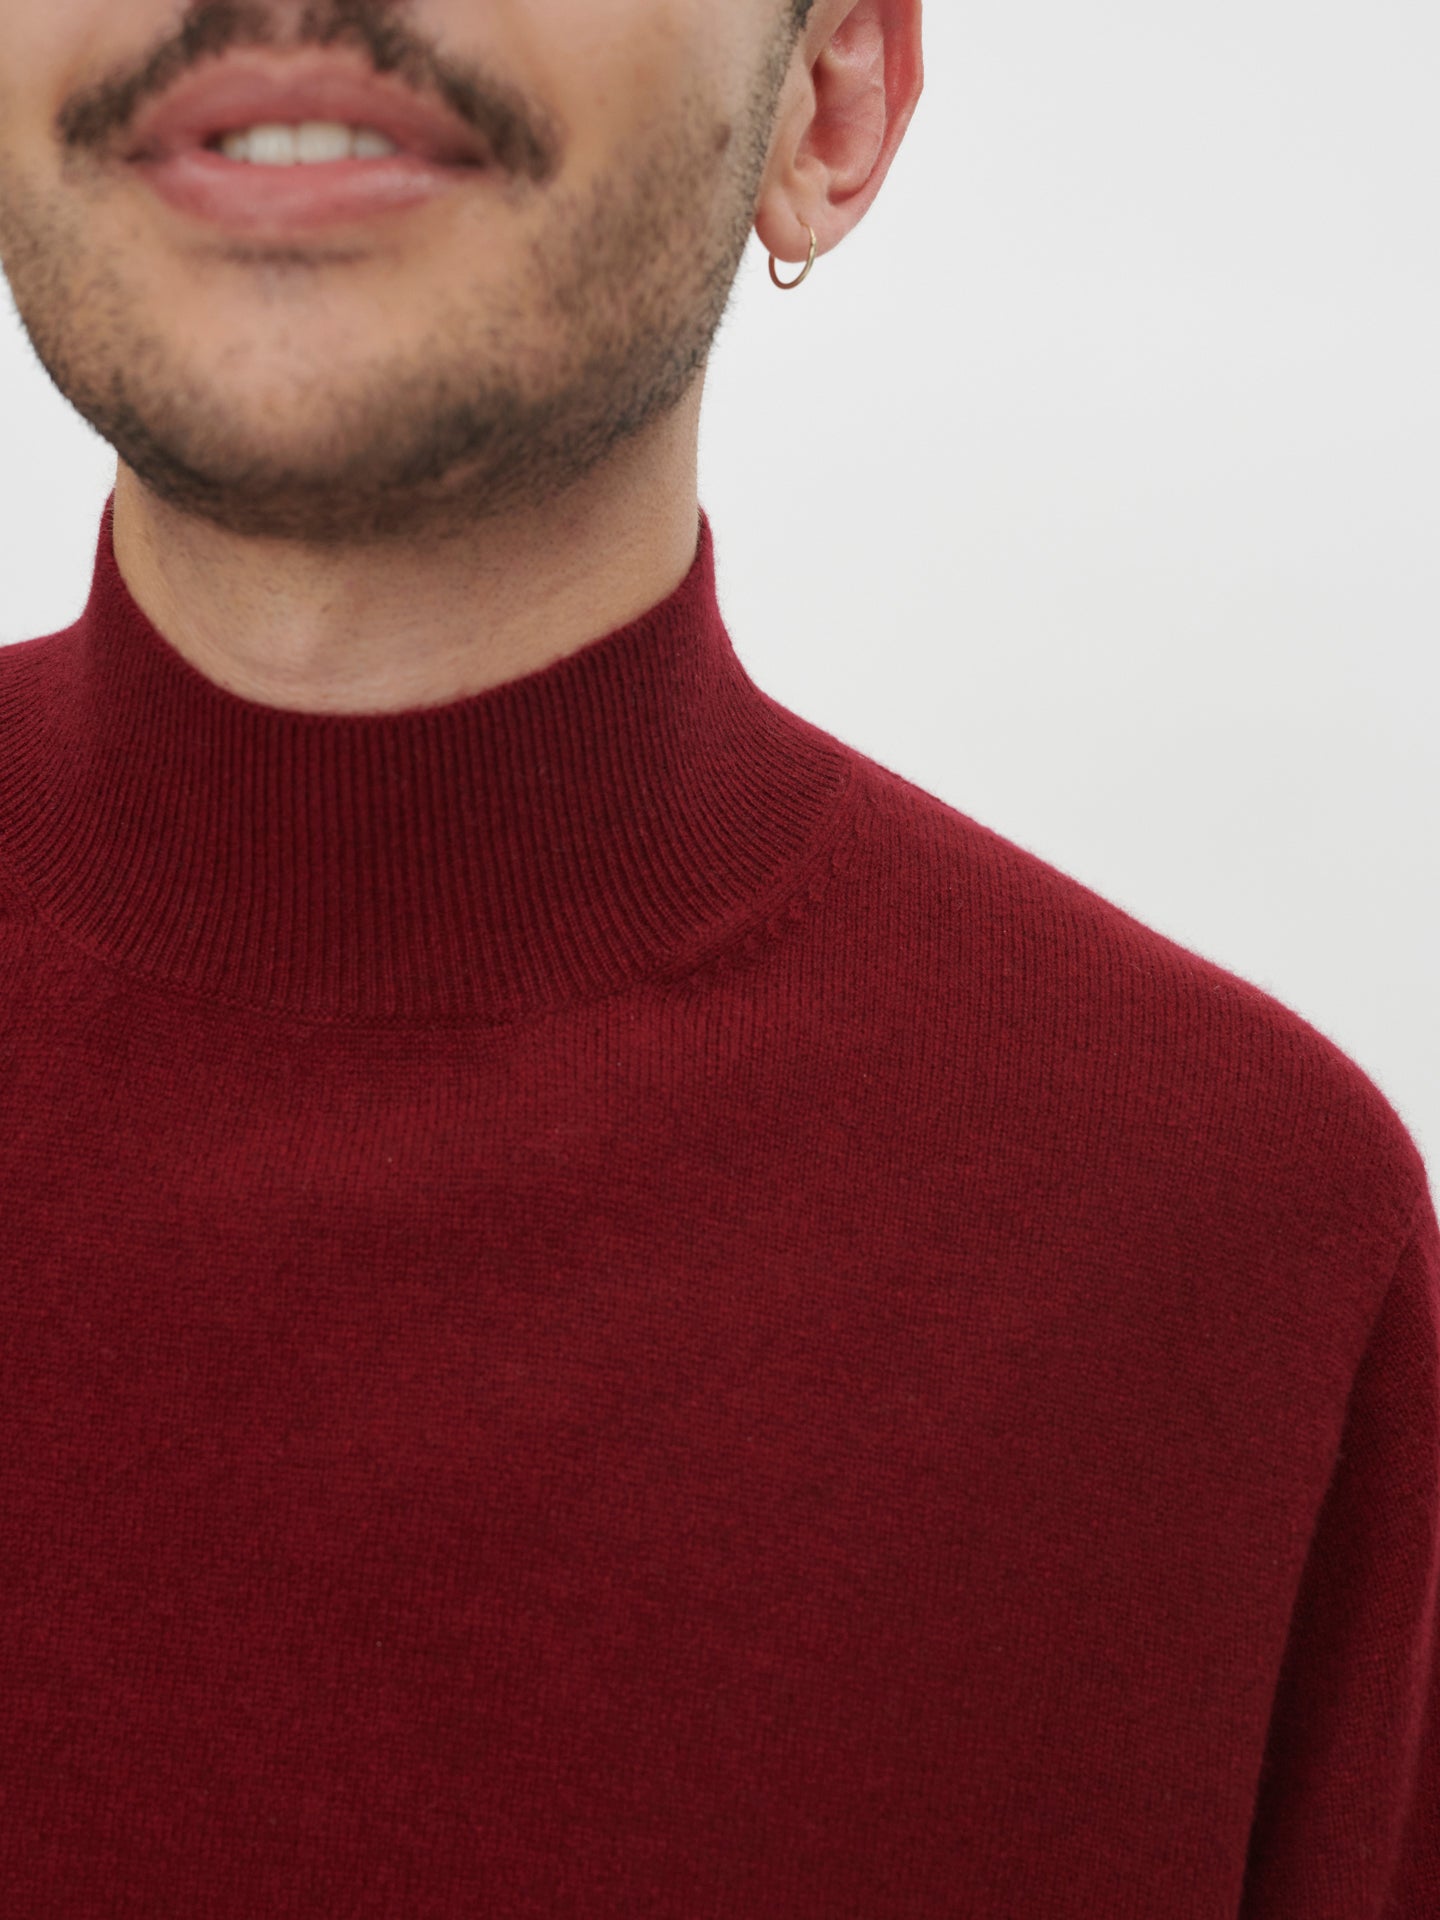 Men's Cashmere Mock Neck Sweater Bordeaux - Gobi Cashmere